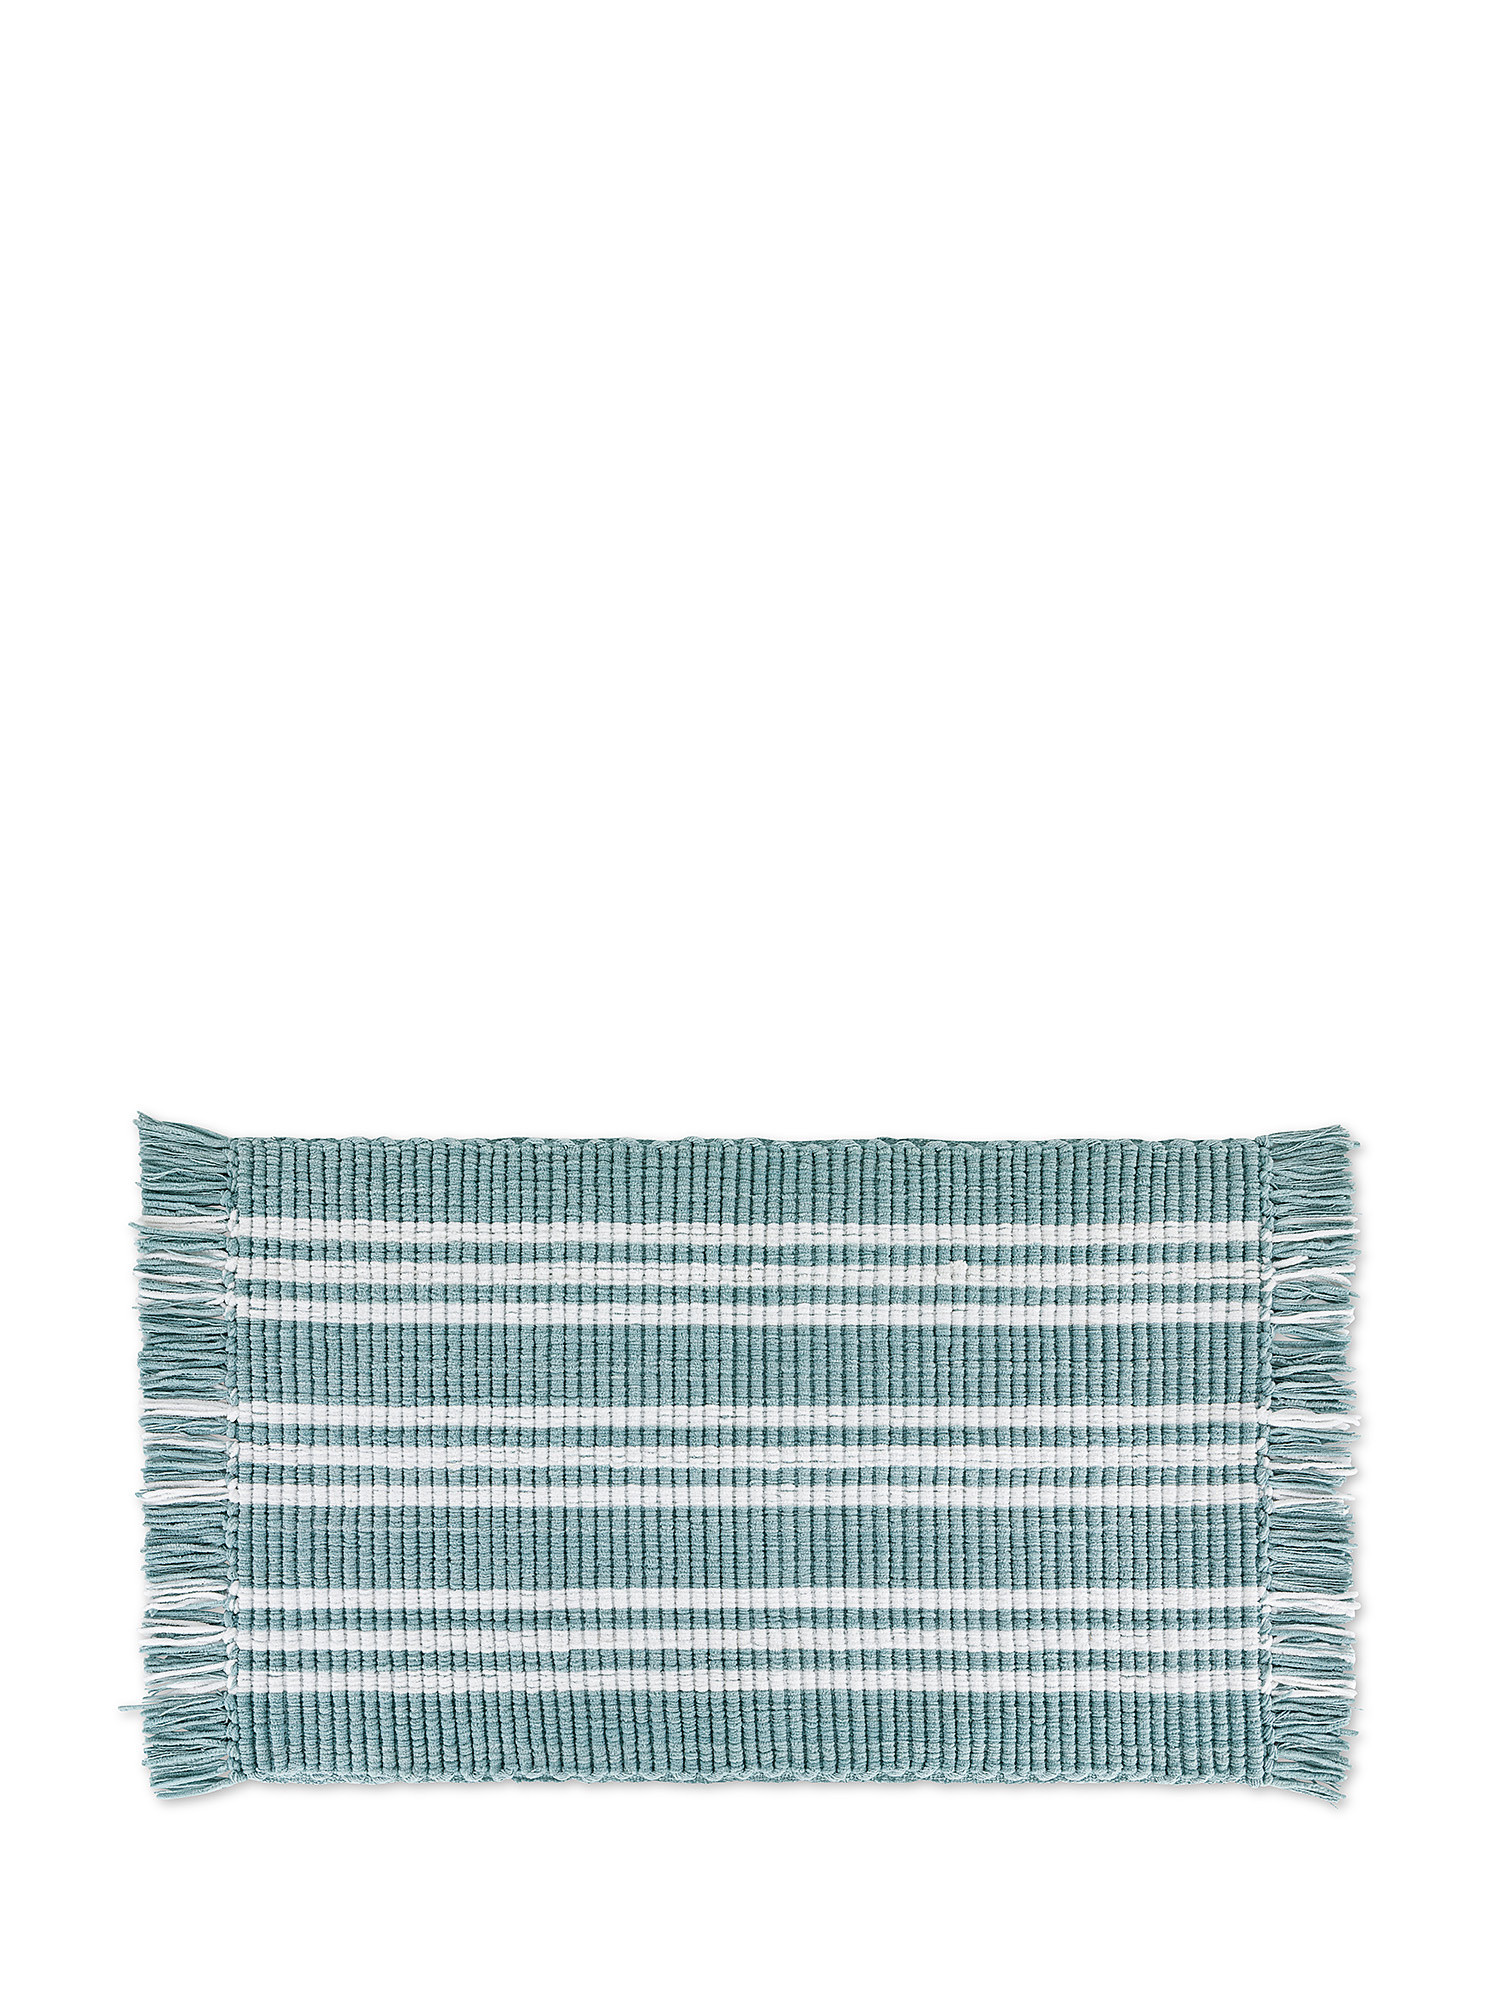 Tappeto bagno micro cotone con frange, Azzurro, large image number 0